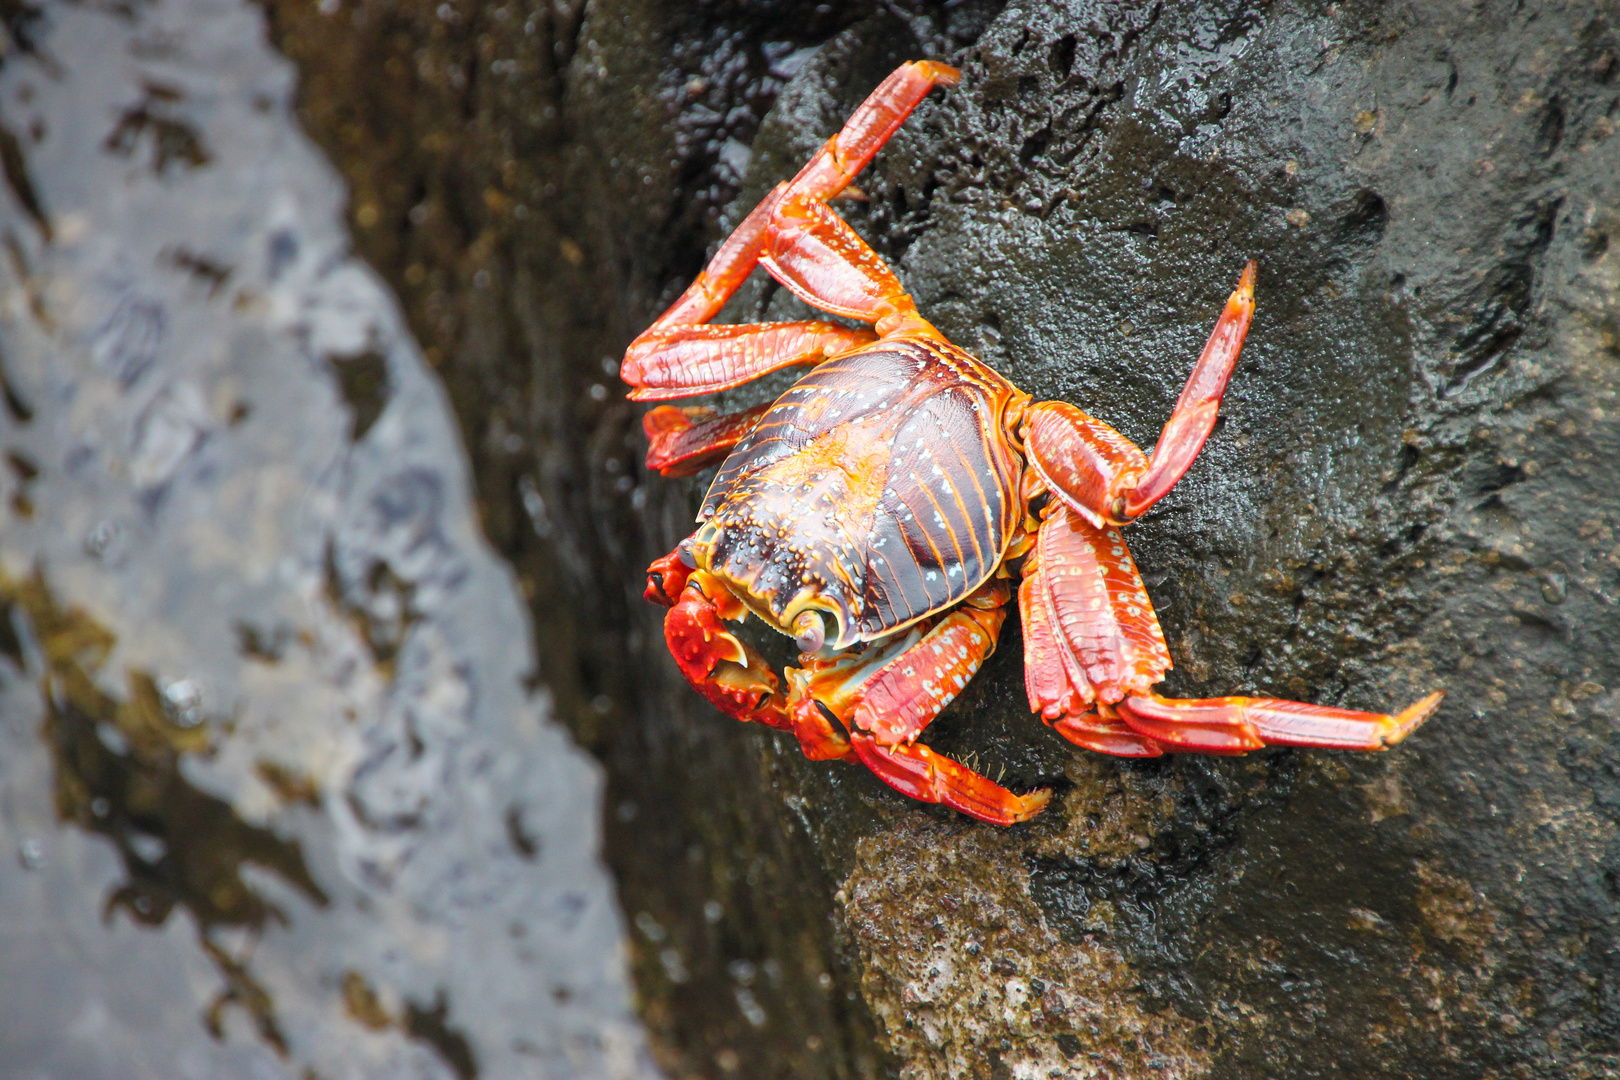 Krabbe auf Galapagos